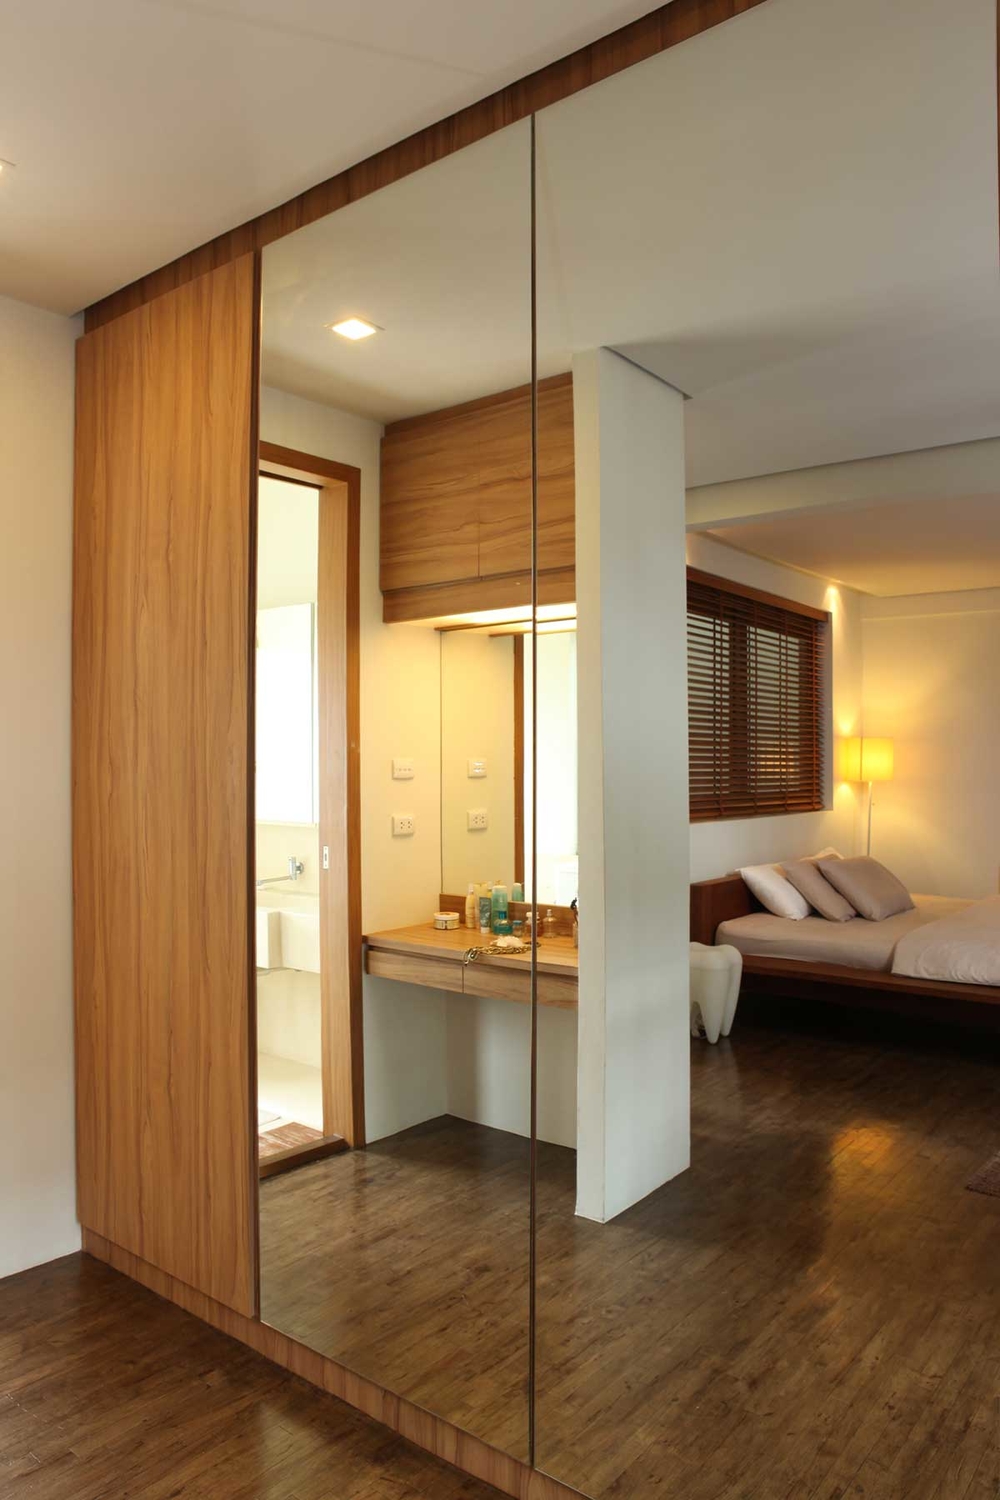 
Phòng ngủ thiết kế tủ âm tường giúp tiết kiệm diện tích và gương lớn tạo không gian rộng hơn, thoáng đãng hơn